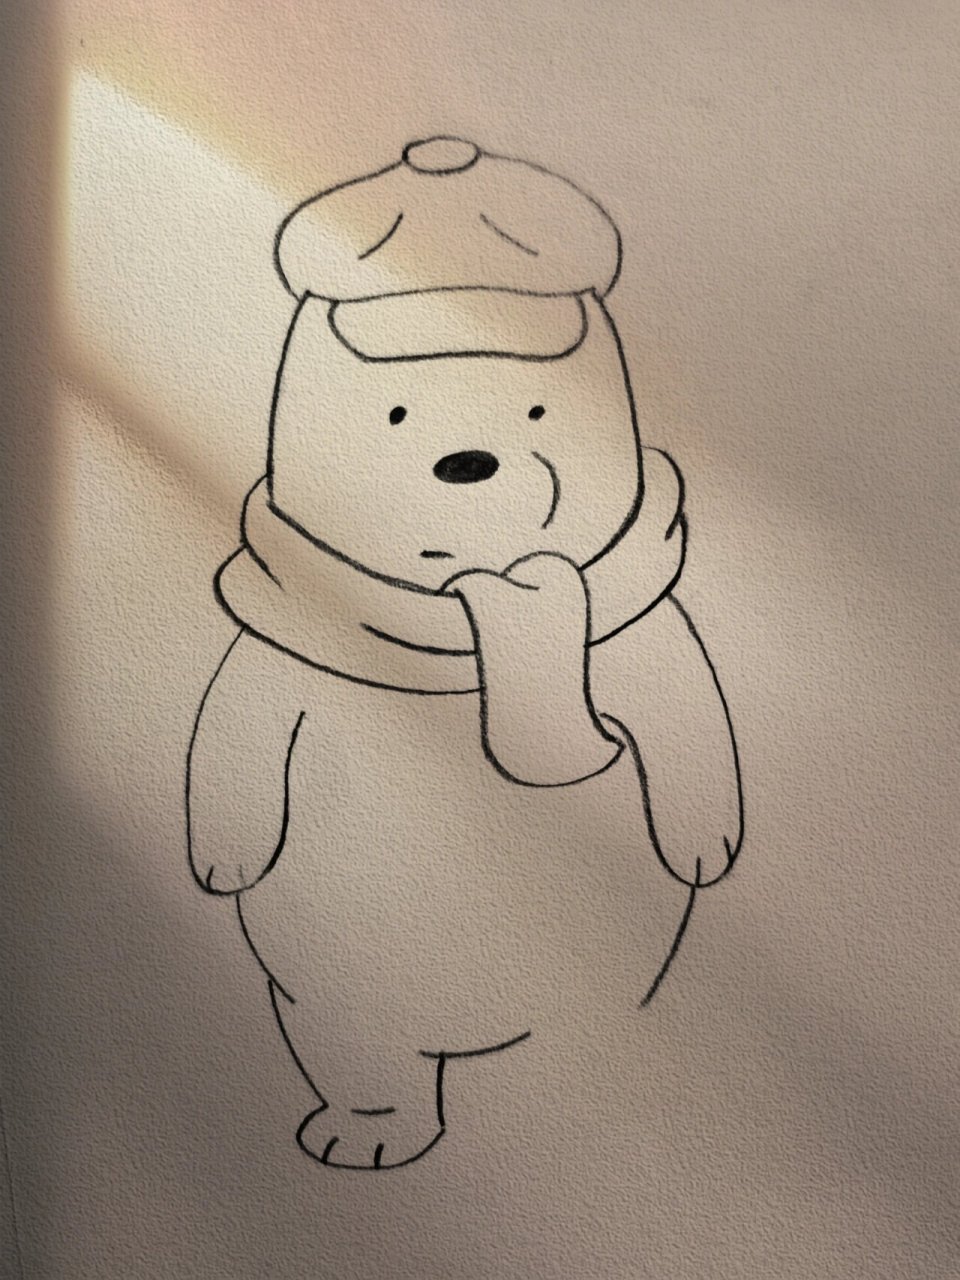 咱们裸熊的简笔画图片